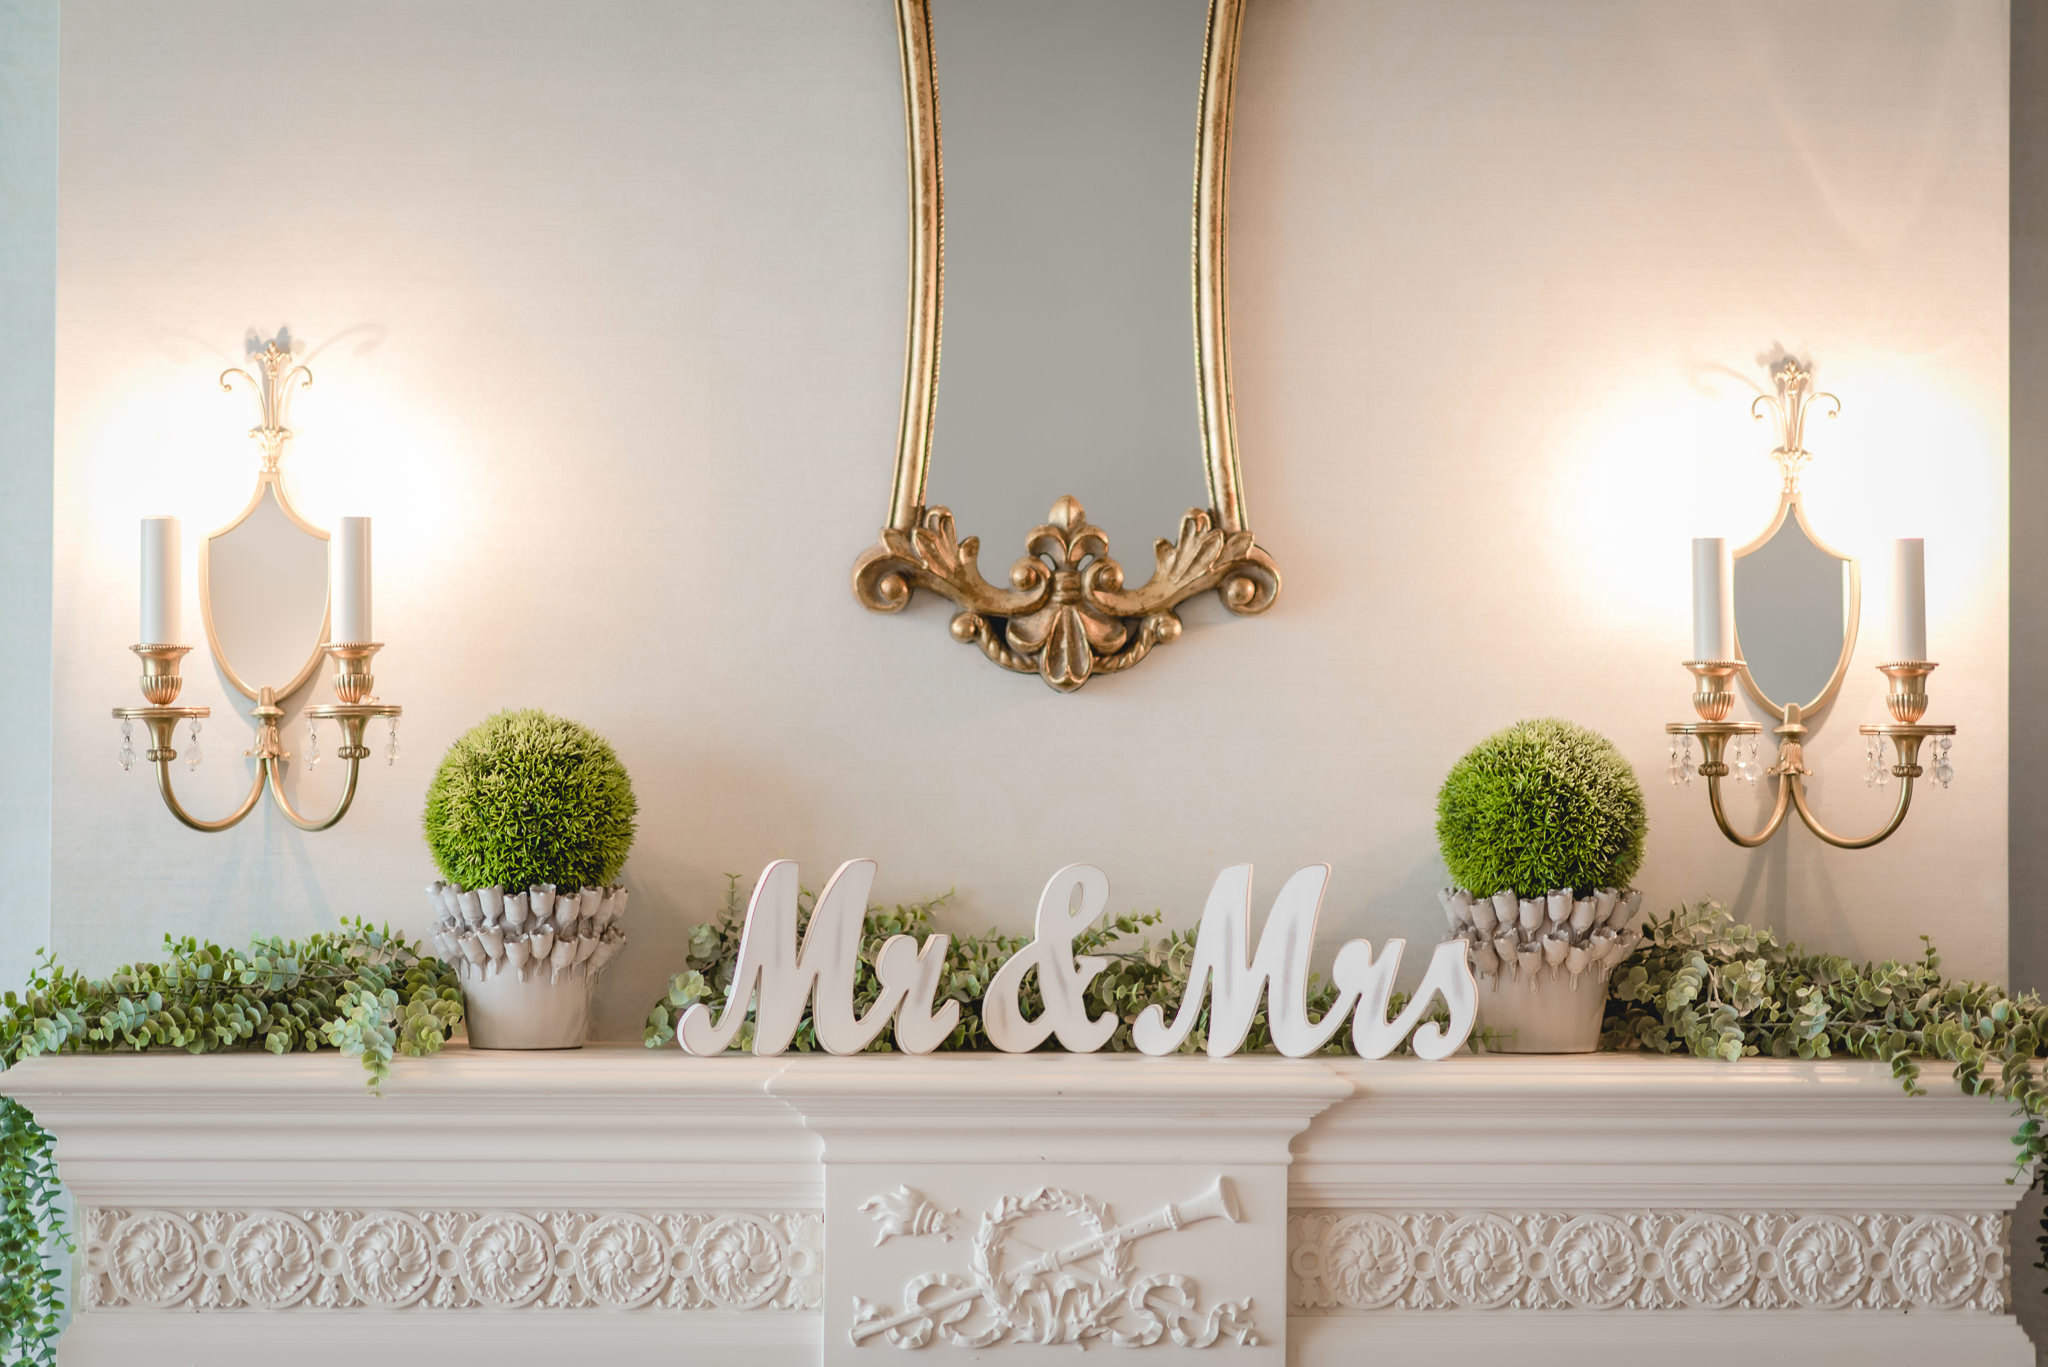 Mr & Mrs signs on a mantle inside Linden Hall mansion